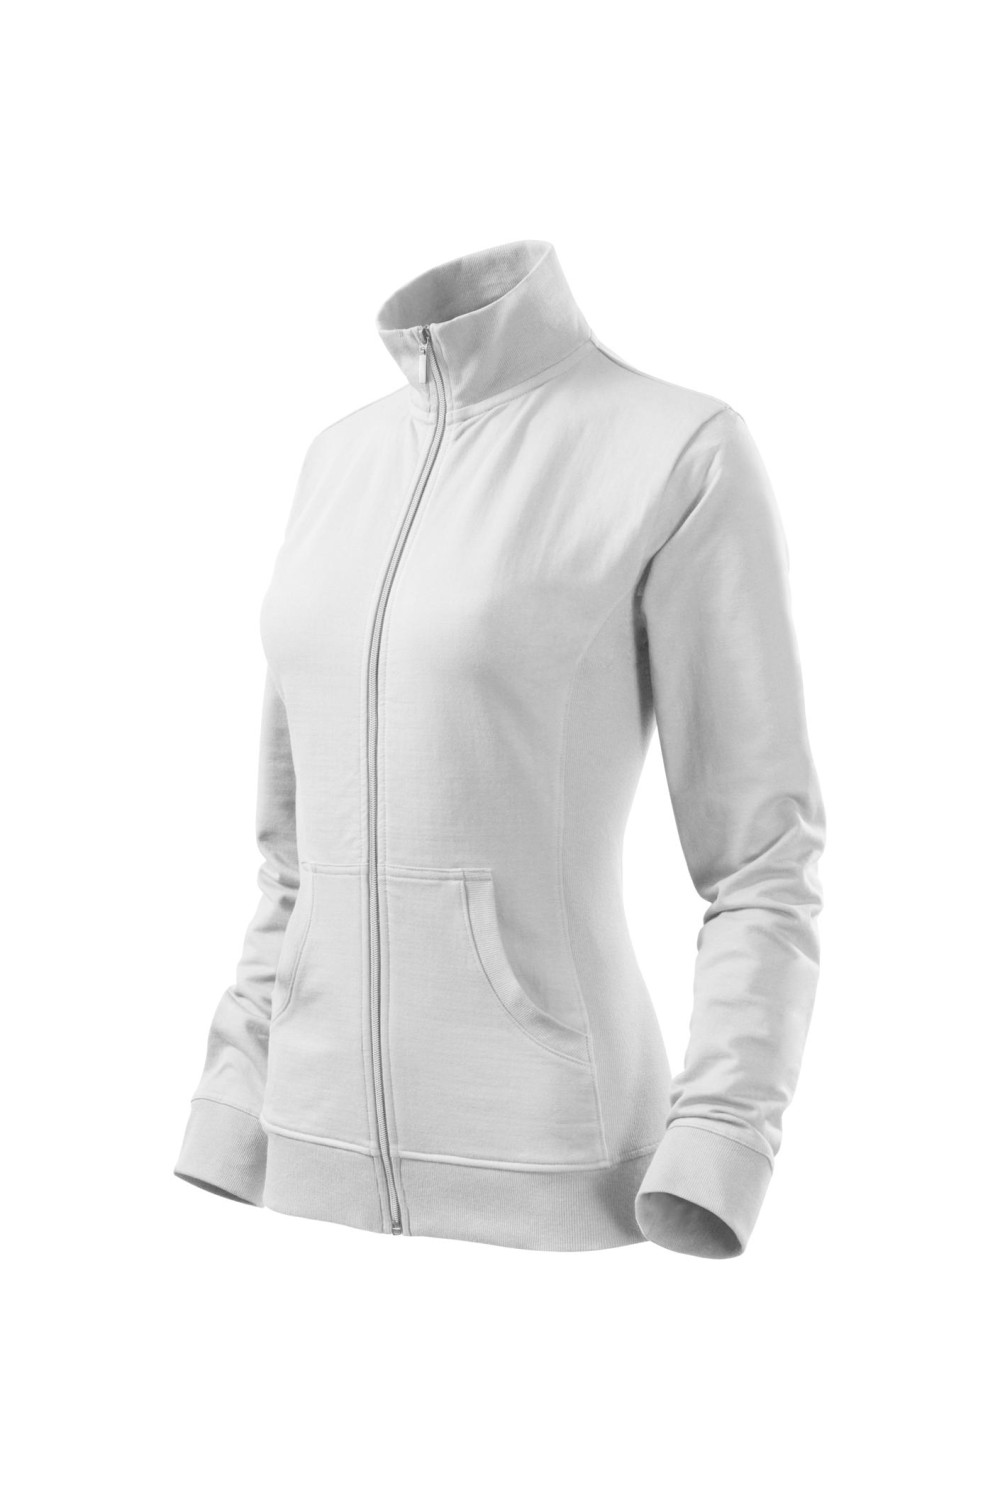 VIVA 409 MALFINI ADLER Bluza sportowa damska biały